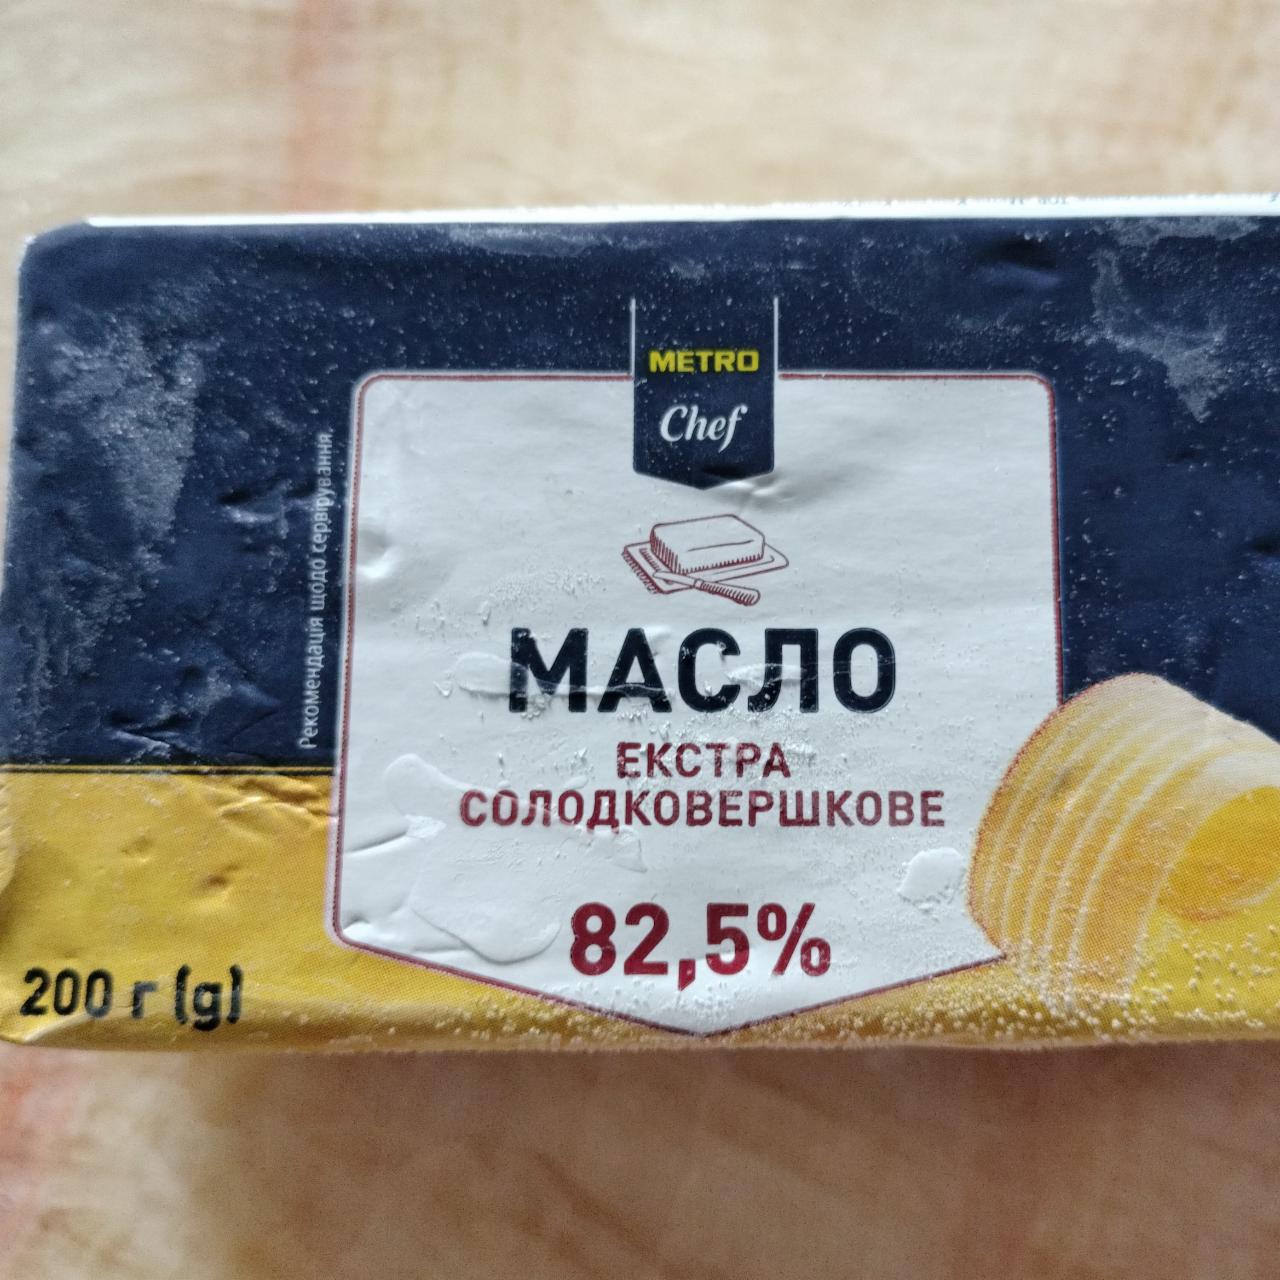 Фото - Масло солодковершкове 82.5% Екстра Metro Chef